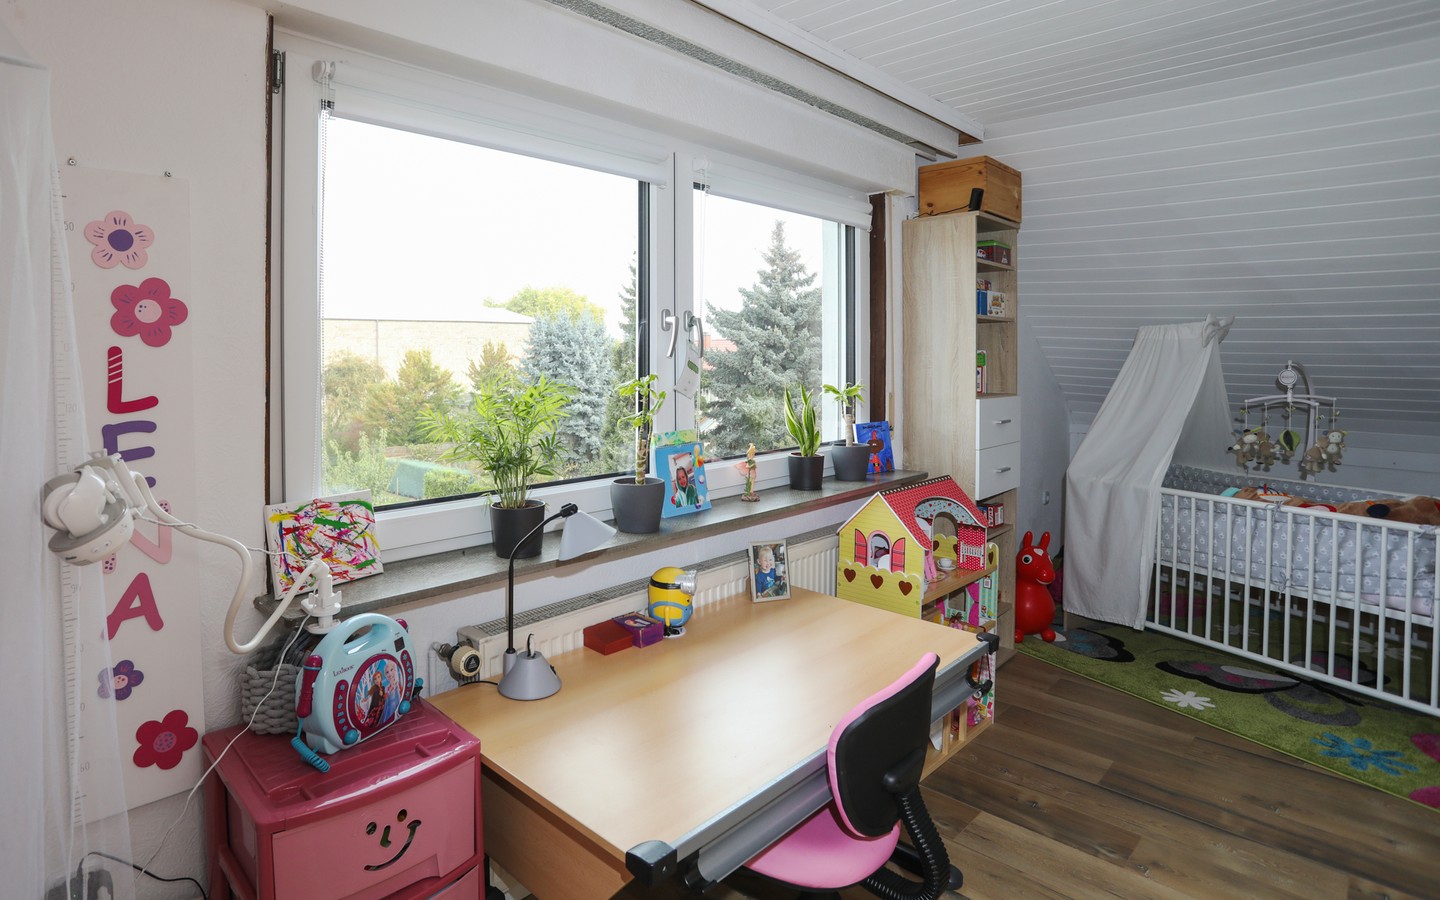 Zimmer 1 DG - Eppelheim: MFH auf großem Erbpachtgrundstück in 
familienfreundlicher Wohnlage zur flexiblen Nutzung